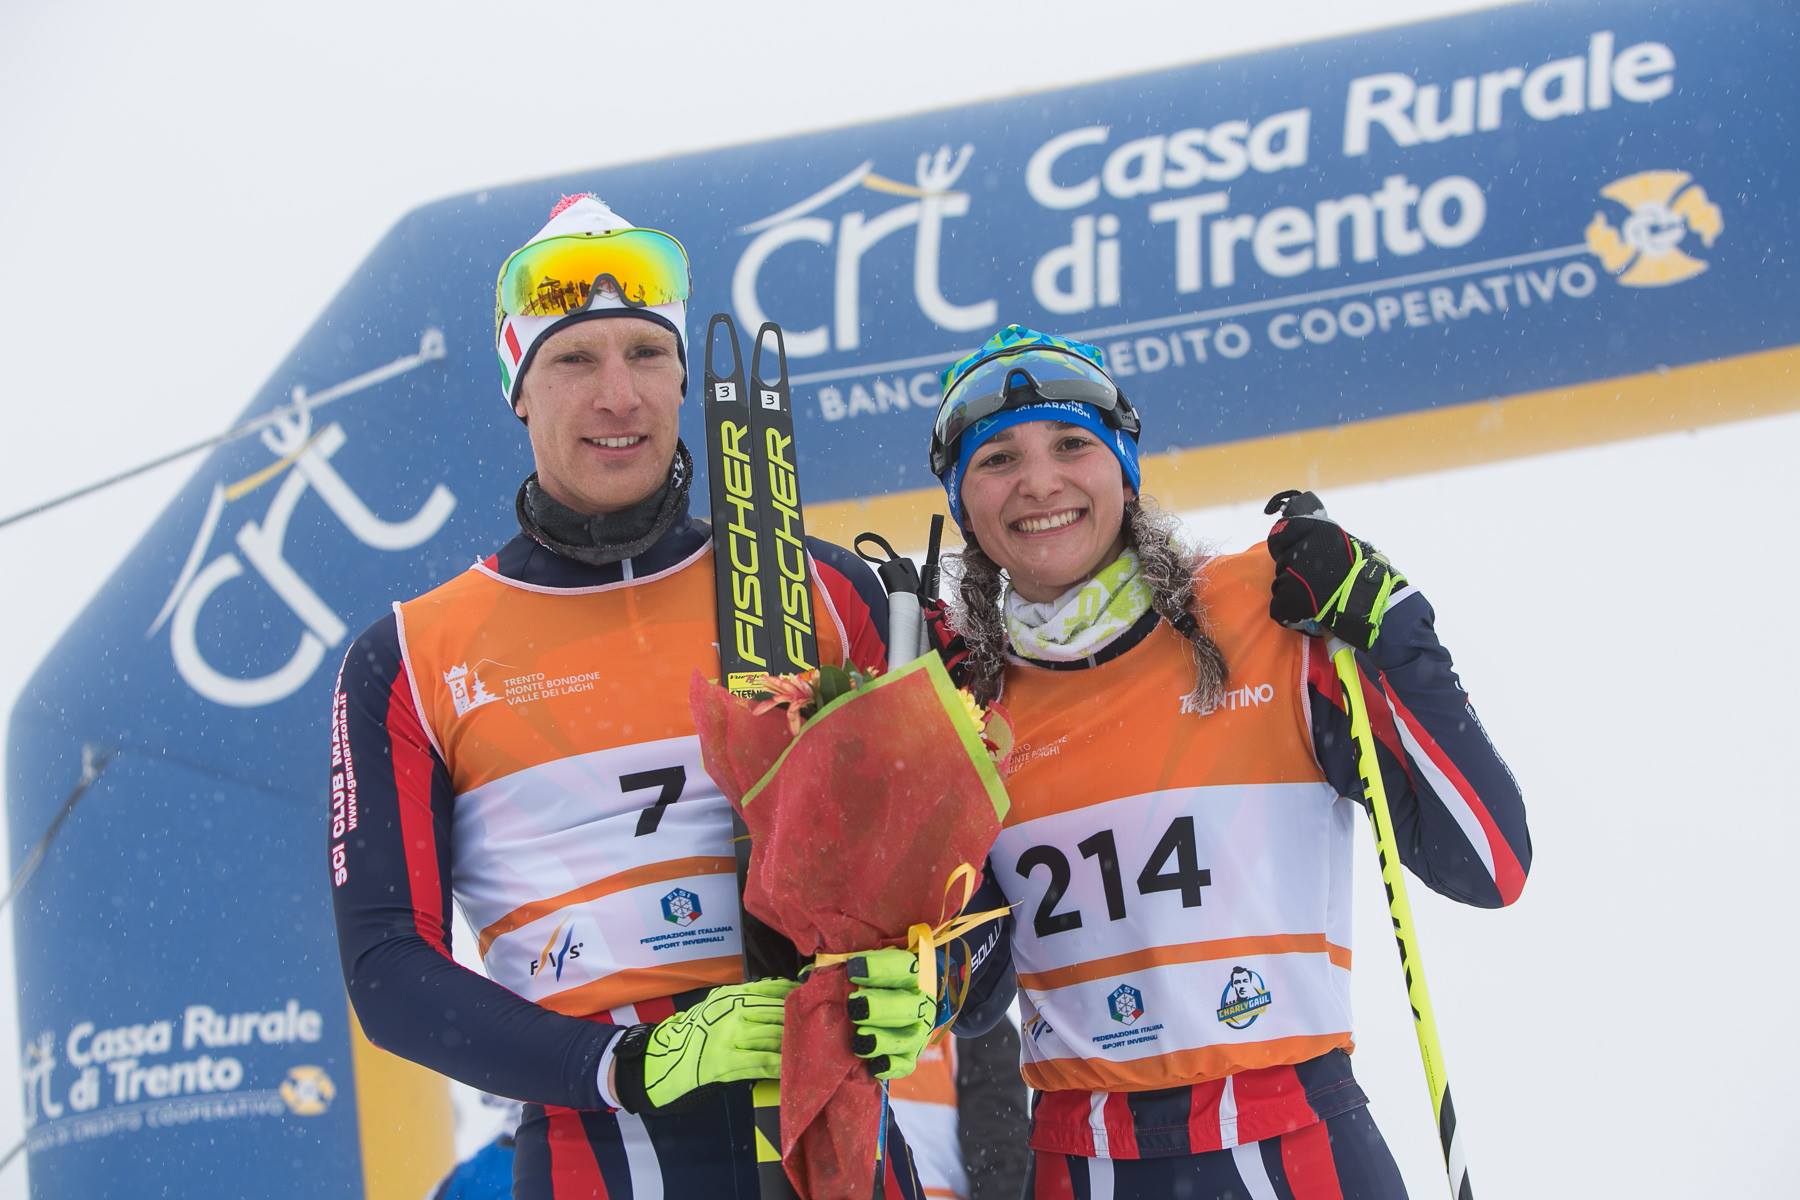 Stefano Detassis Agata Marchi Ski Mrathon